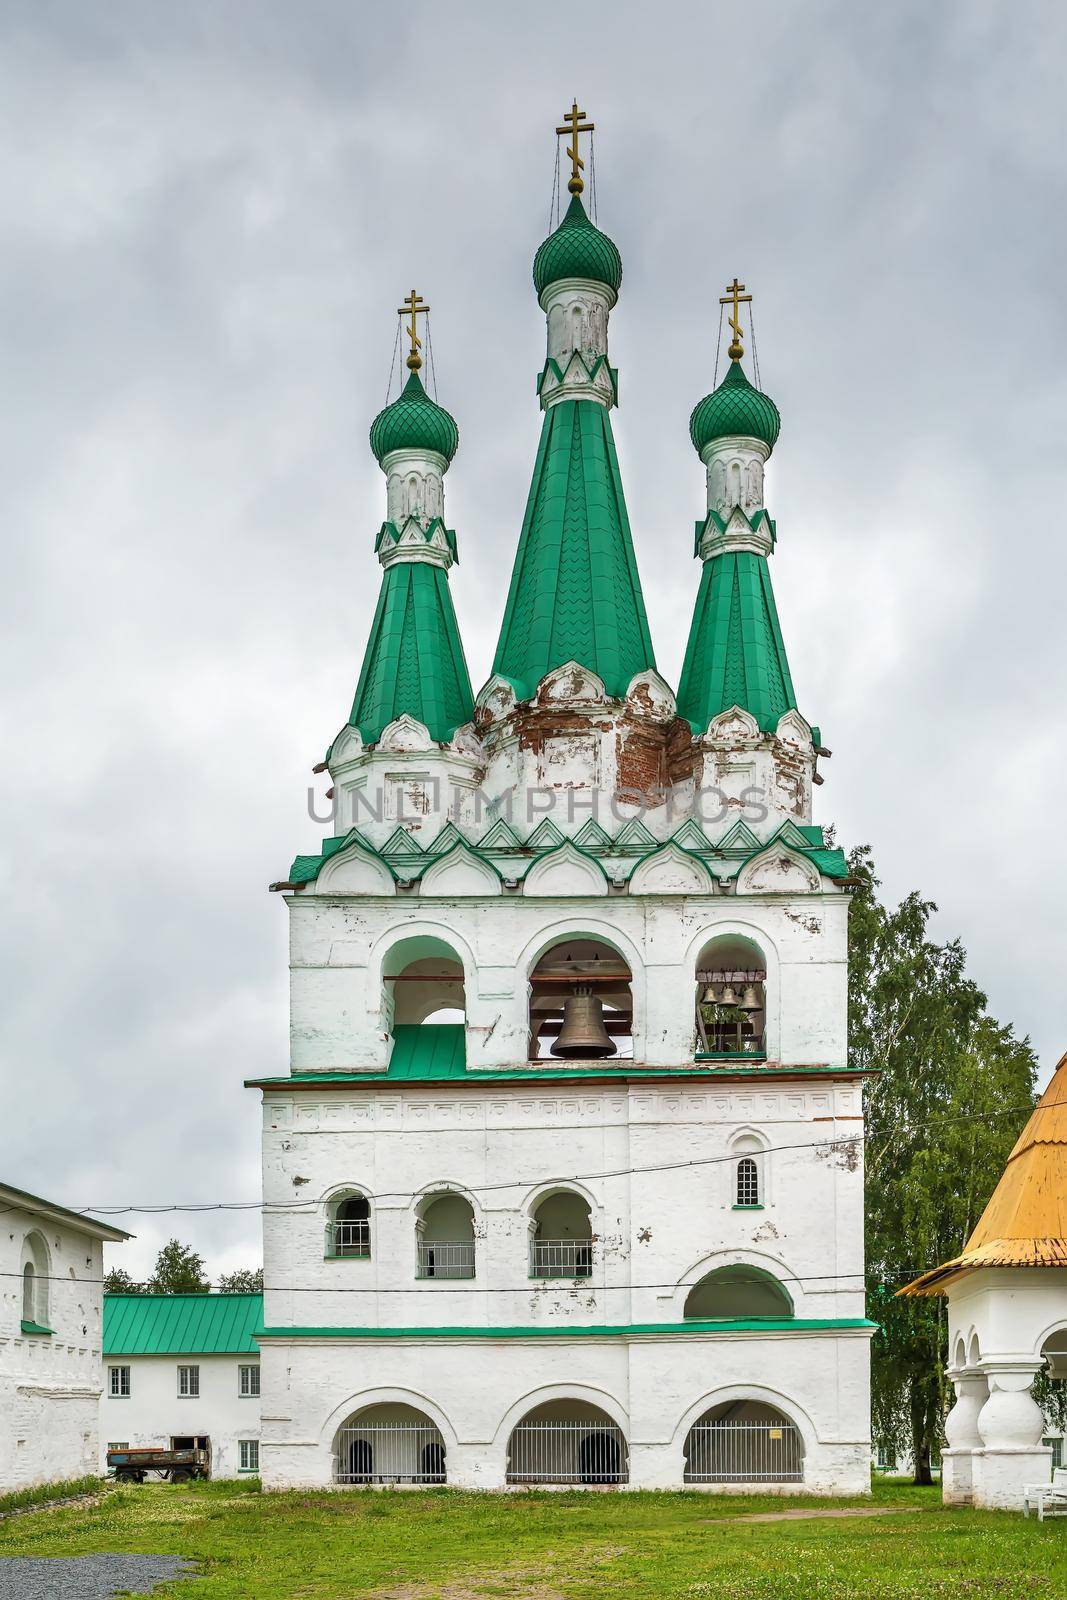 Alexander-Svirsky Monastery is orthodox monastery in the Leningrad region, Russia. Belfry